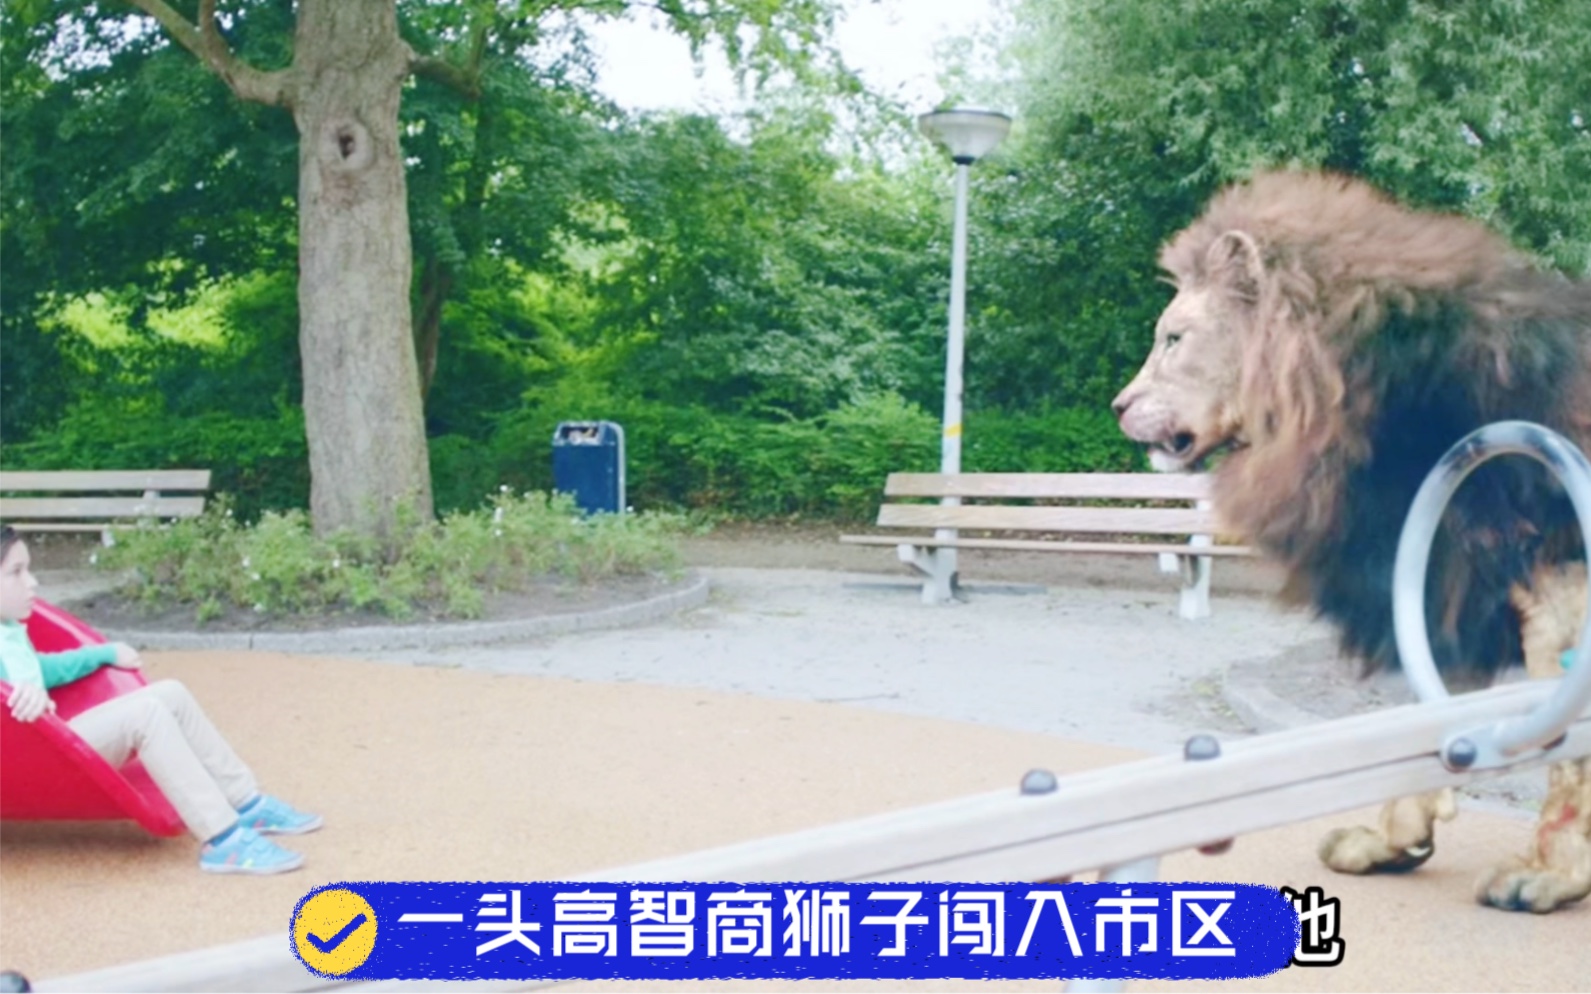 一头智商巨高的狮子闯入市区。